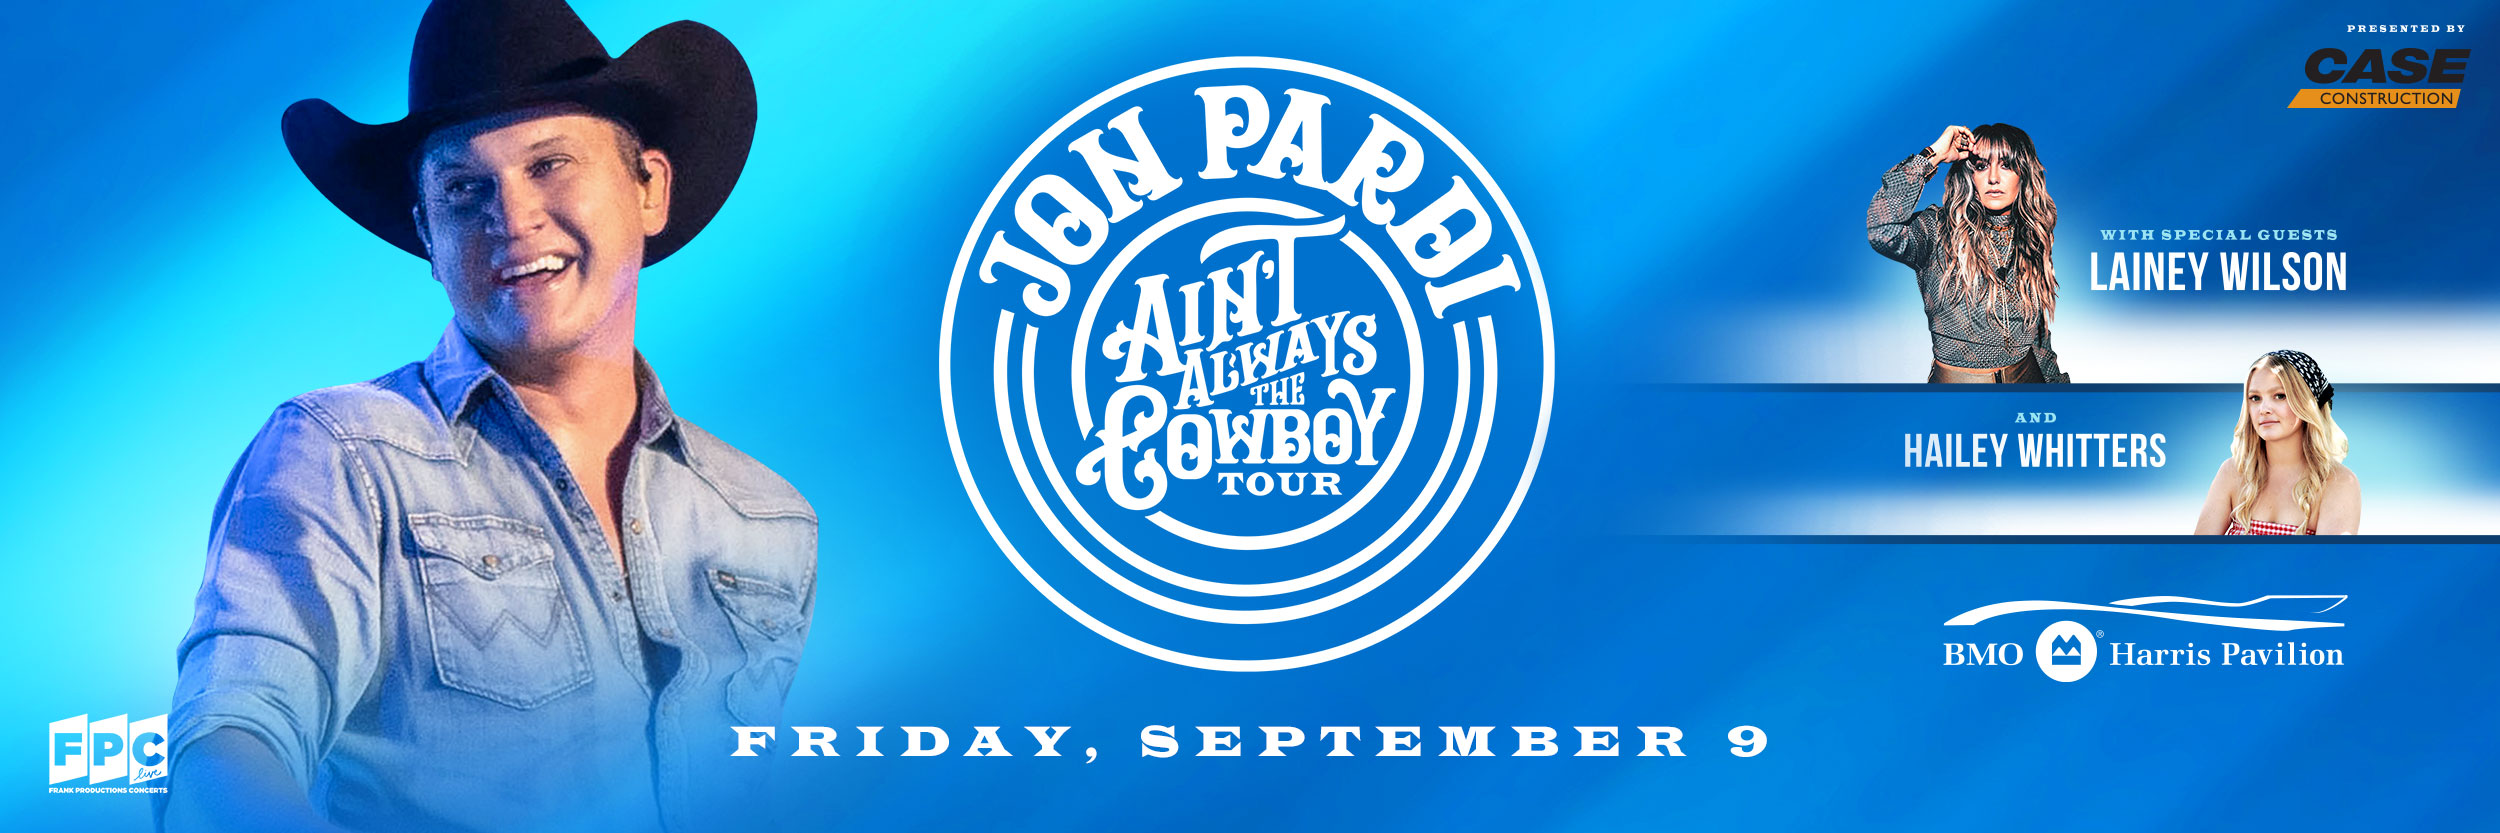 Jon Pardi Aint the Cowboy Tour